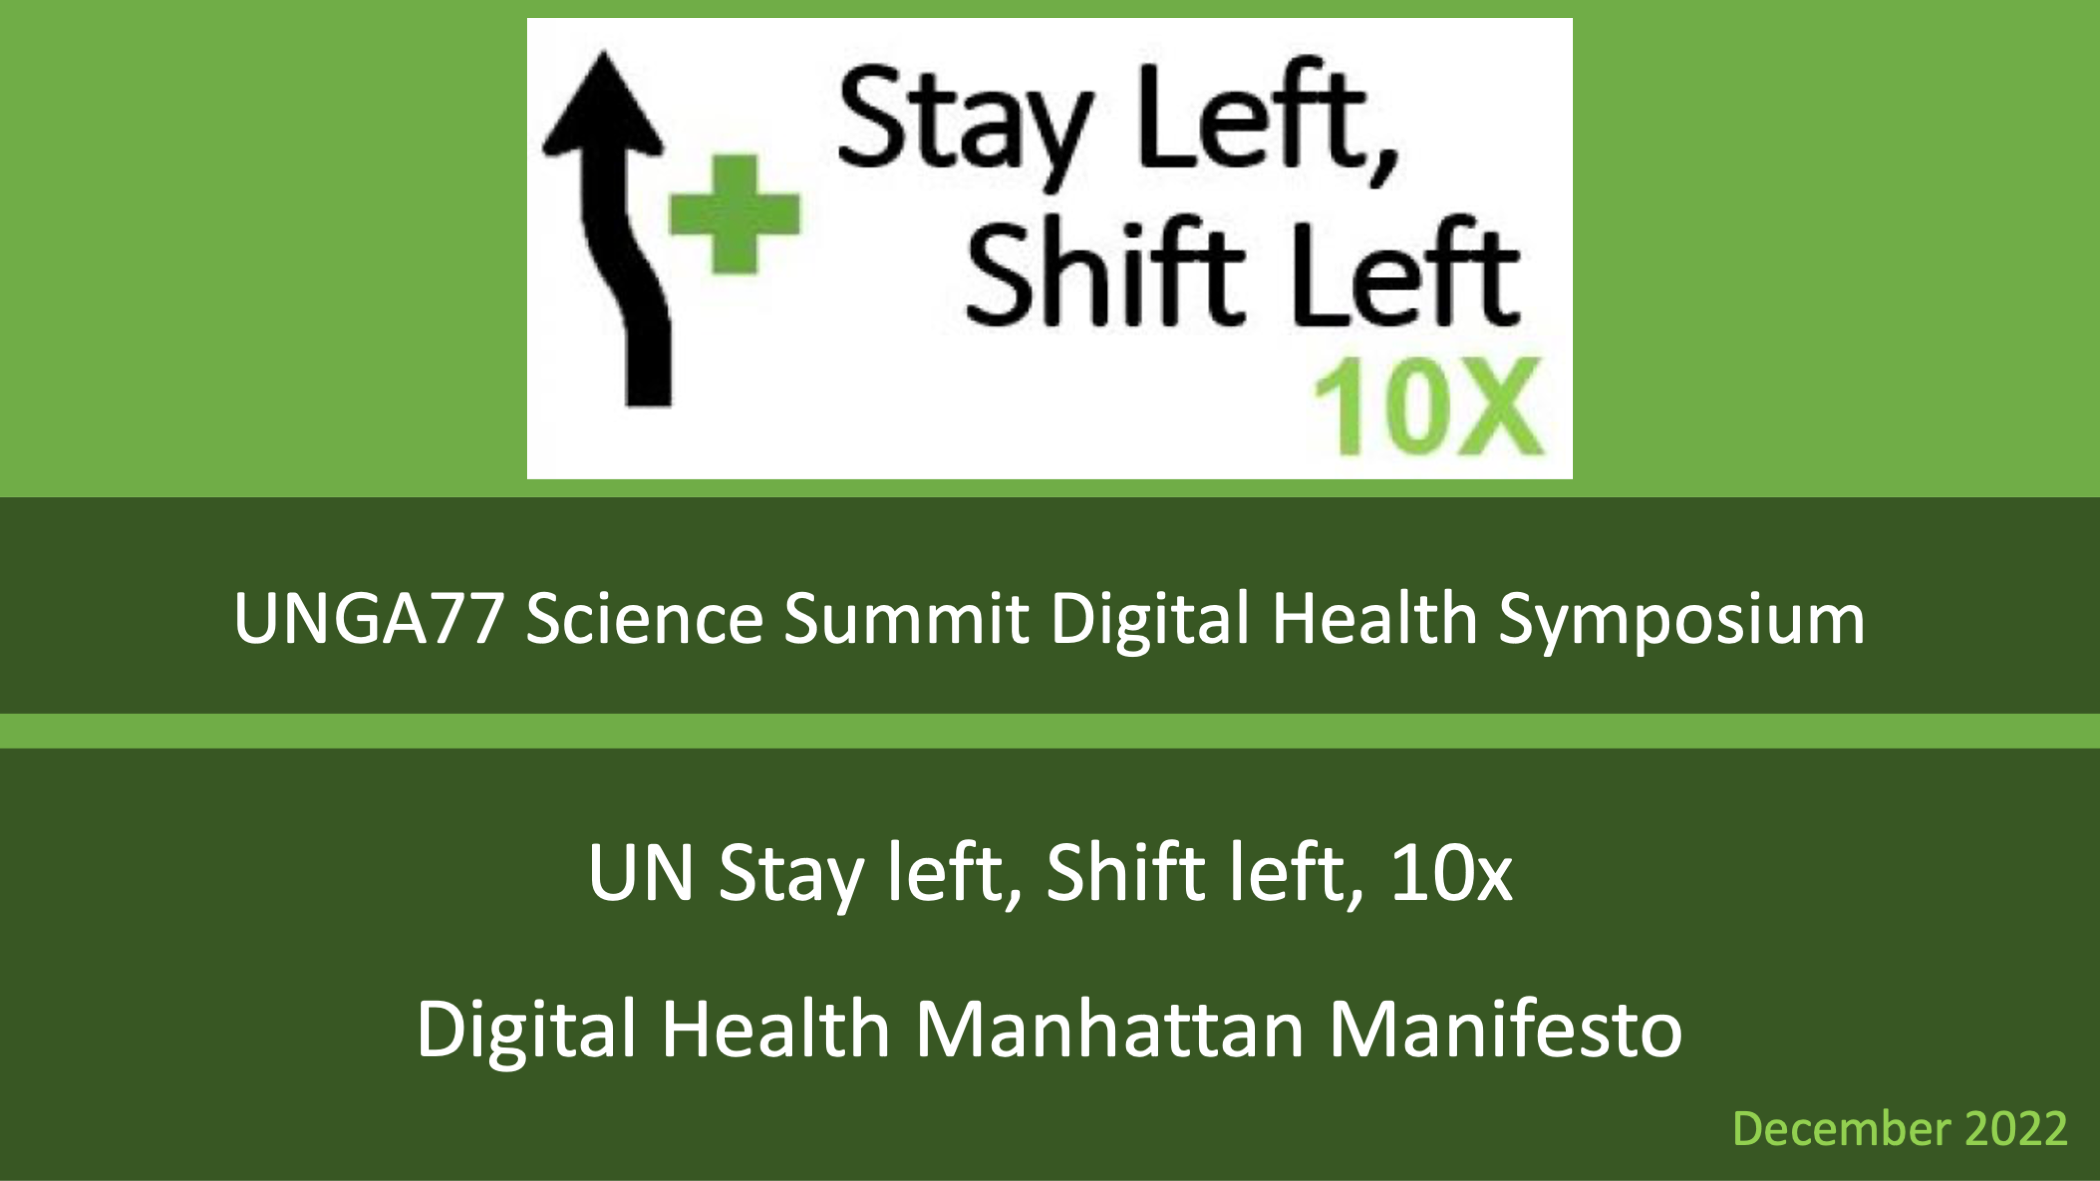 Digital Health Manifesto launch